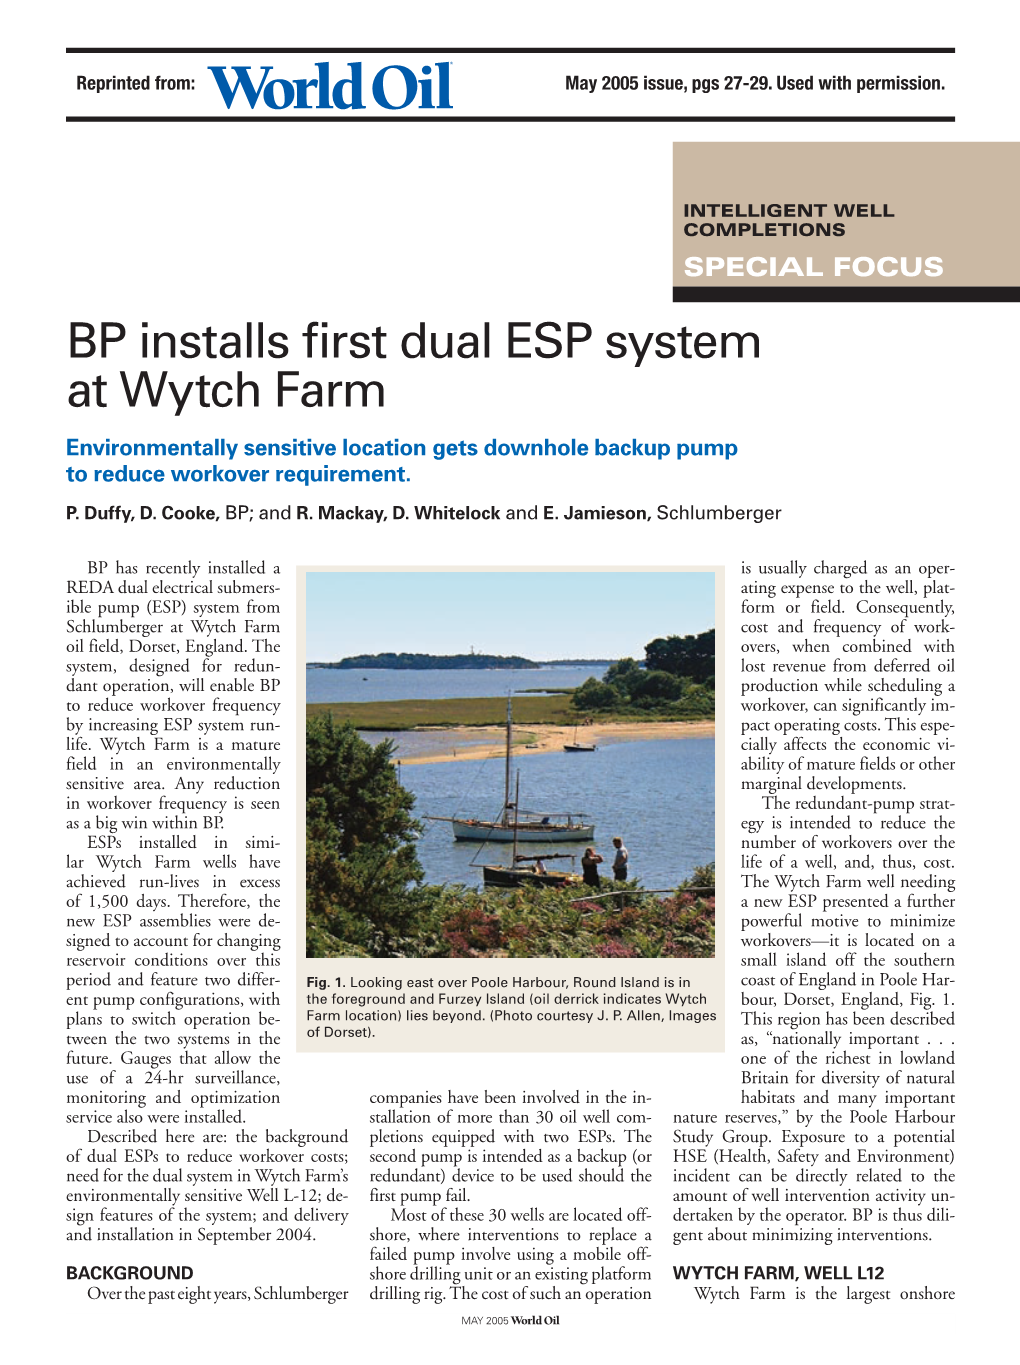 BP Installs First Dual ESP System at Wytch Farm